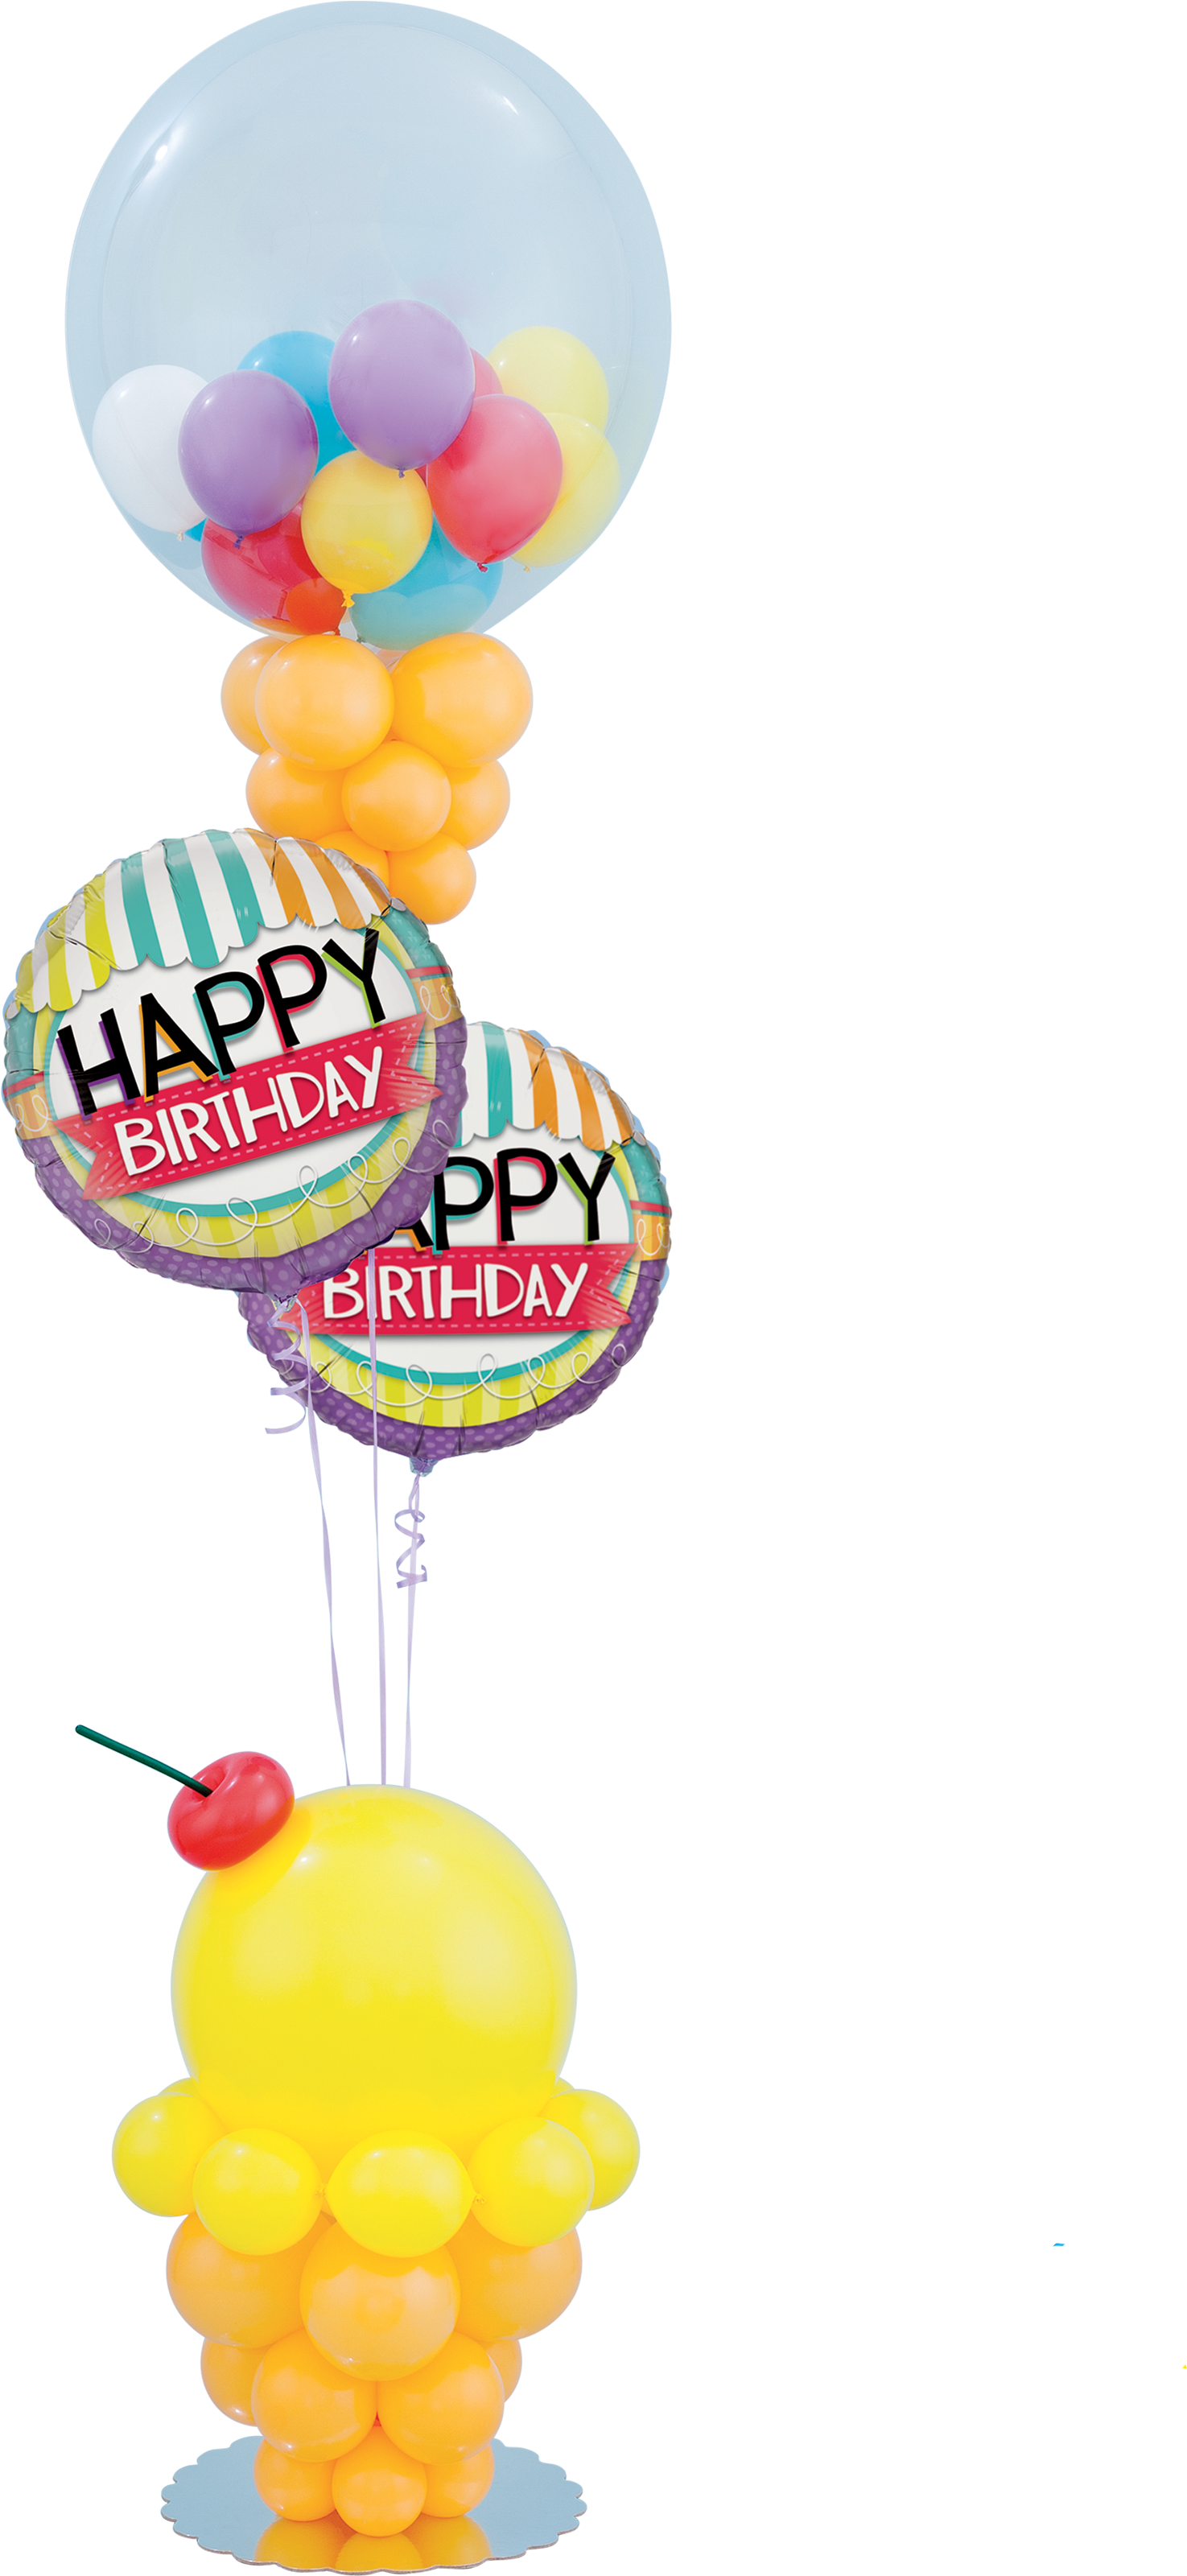 Ice Cream Birthday Balloon Decoration - Ice Cream Birthday Balloon Decoration (3200x3200)